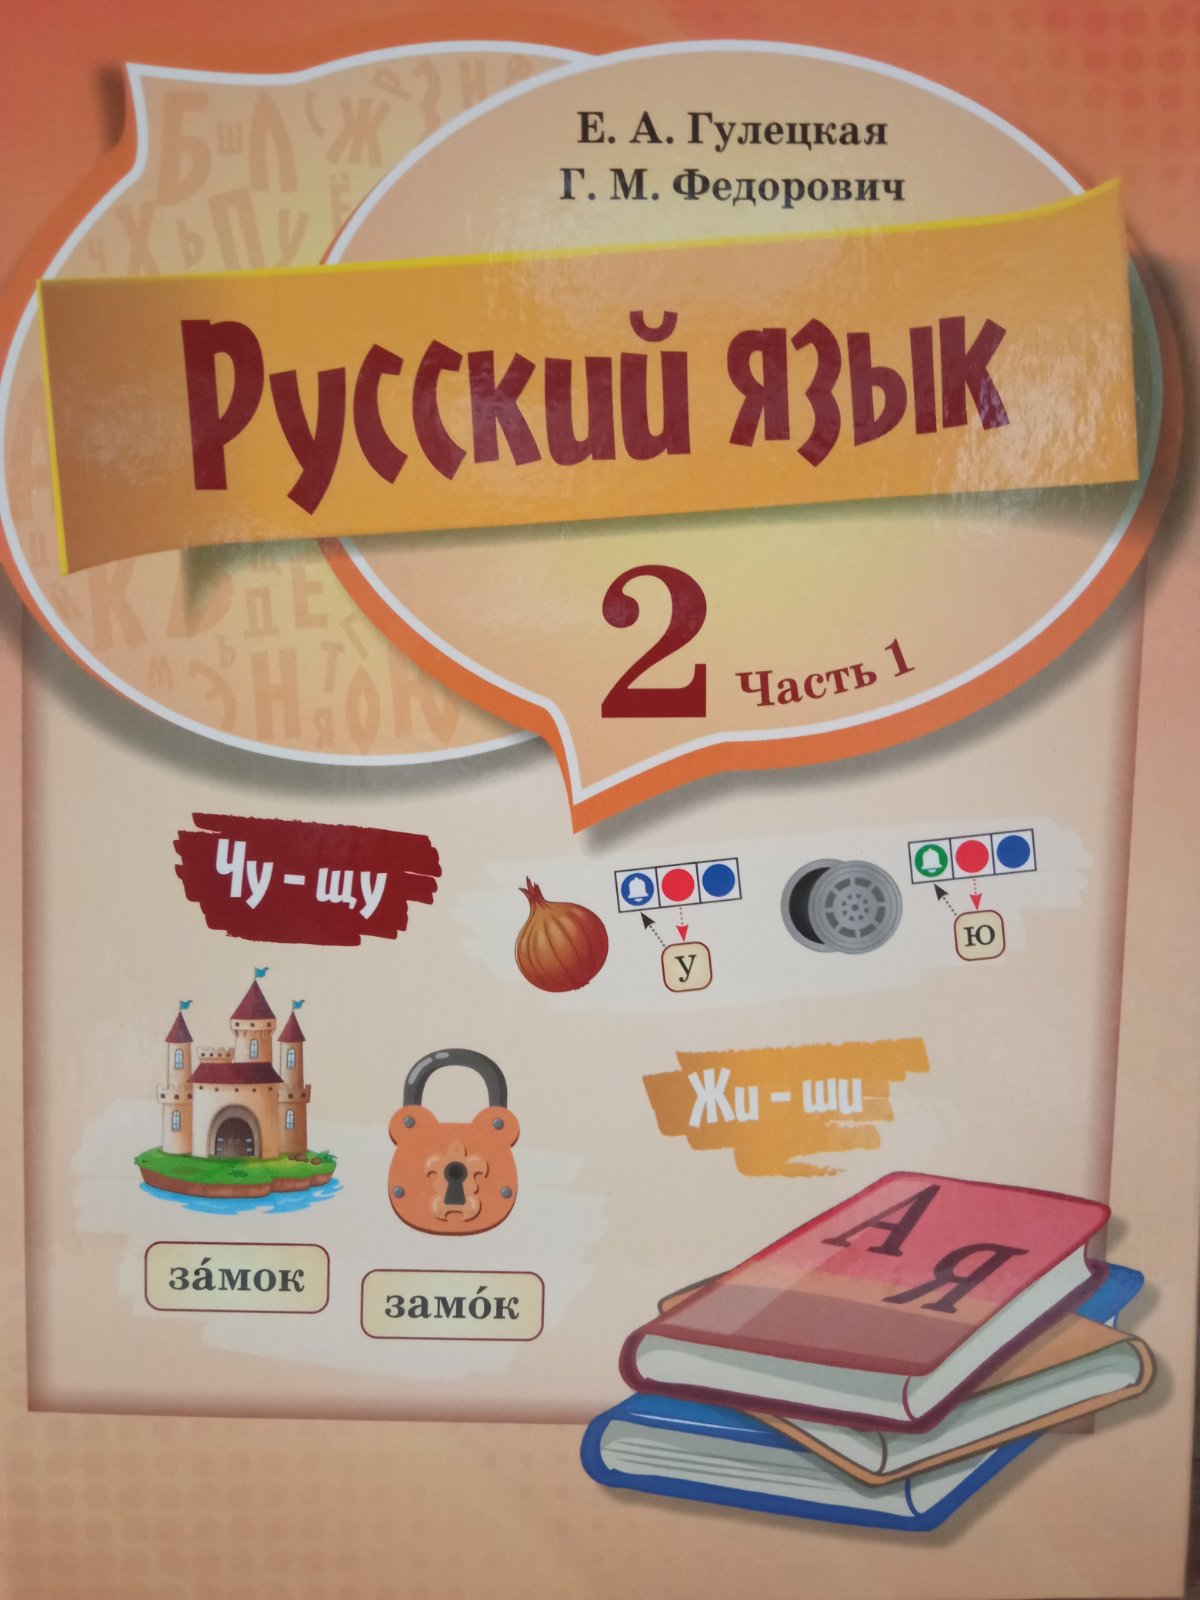 Русский язык. 2 класс. Часть 1.